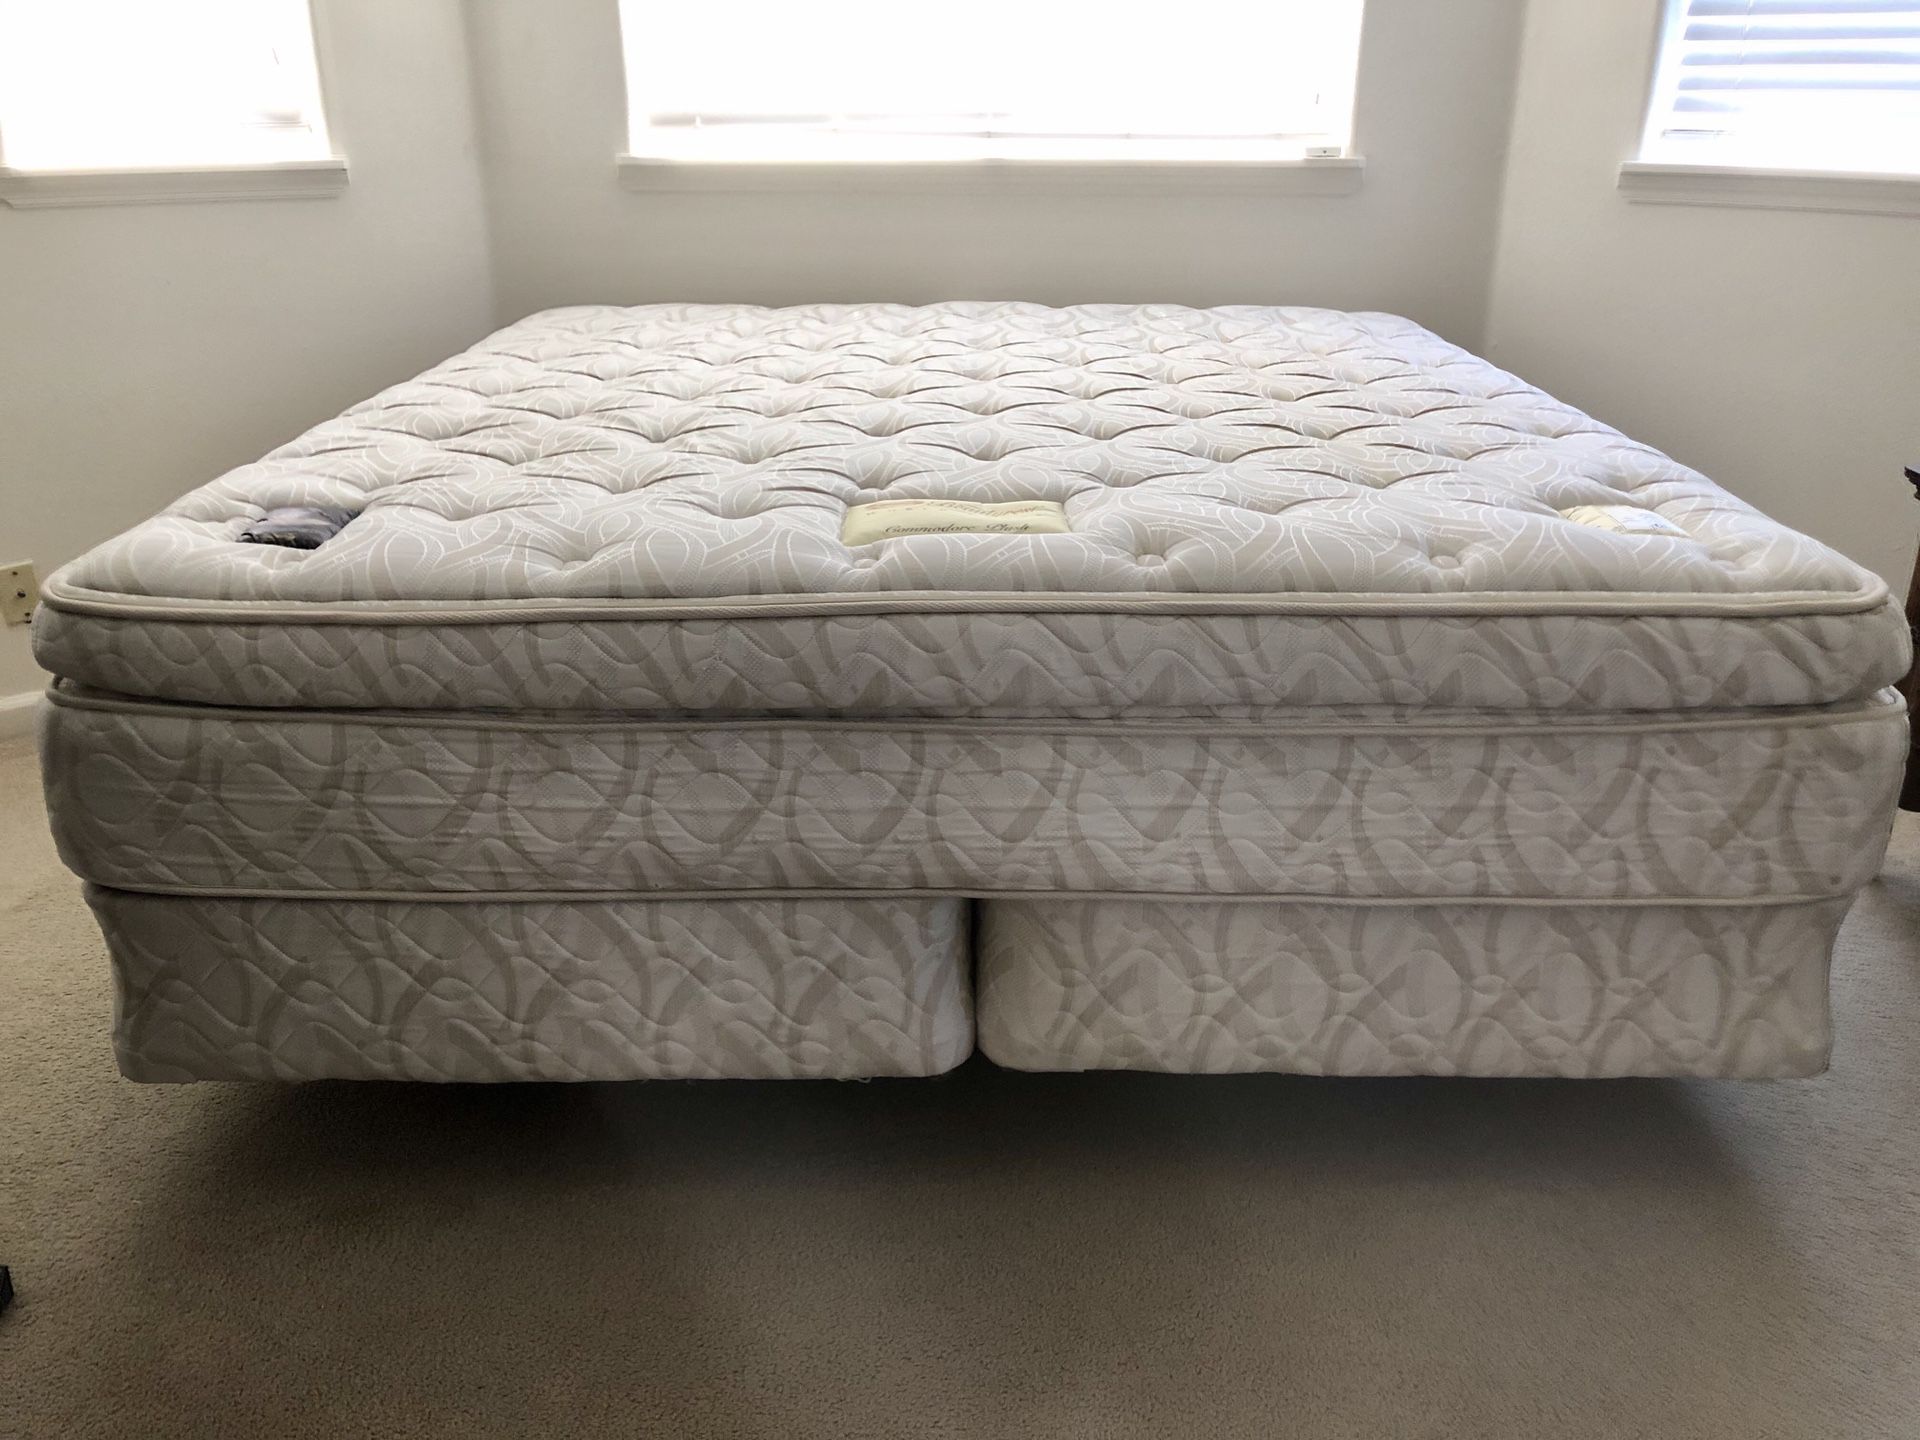 King Beautyrest mattress set and frame